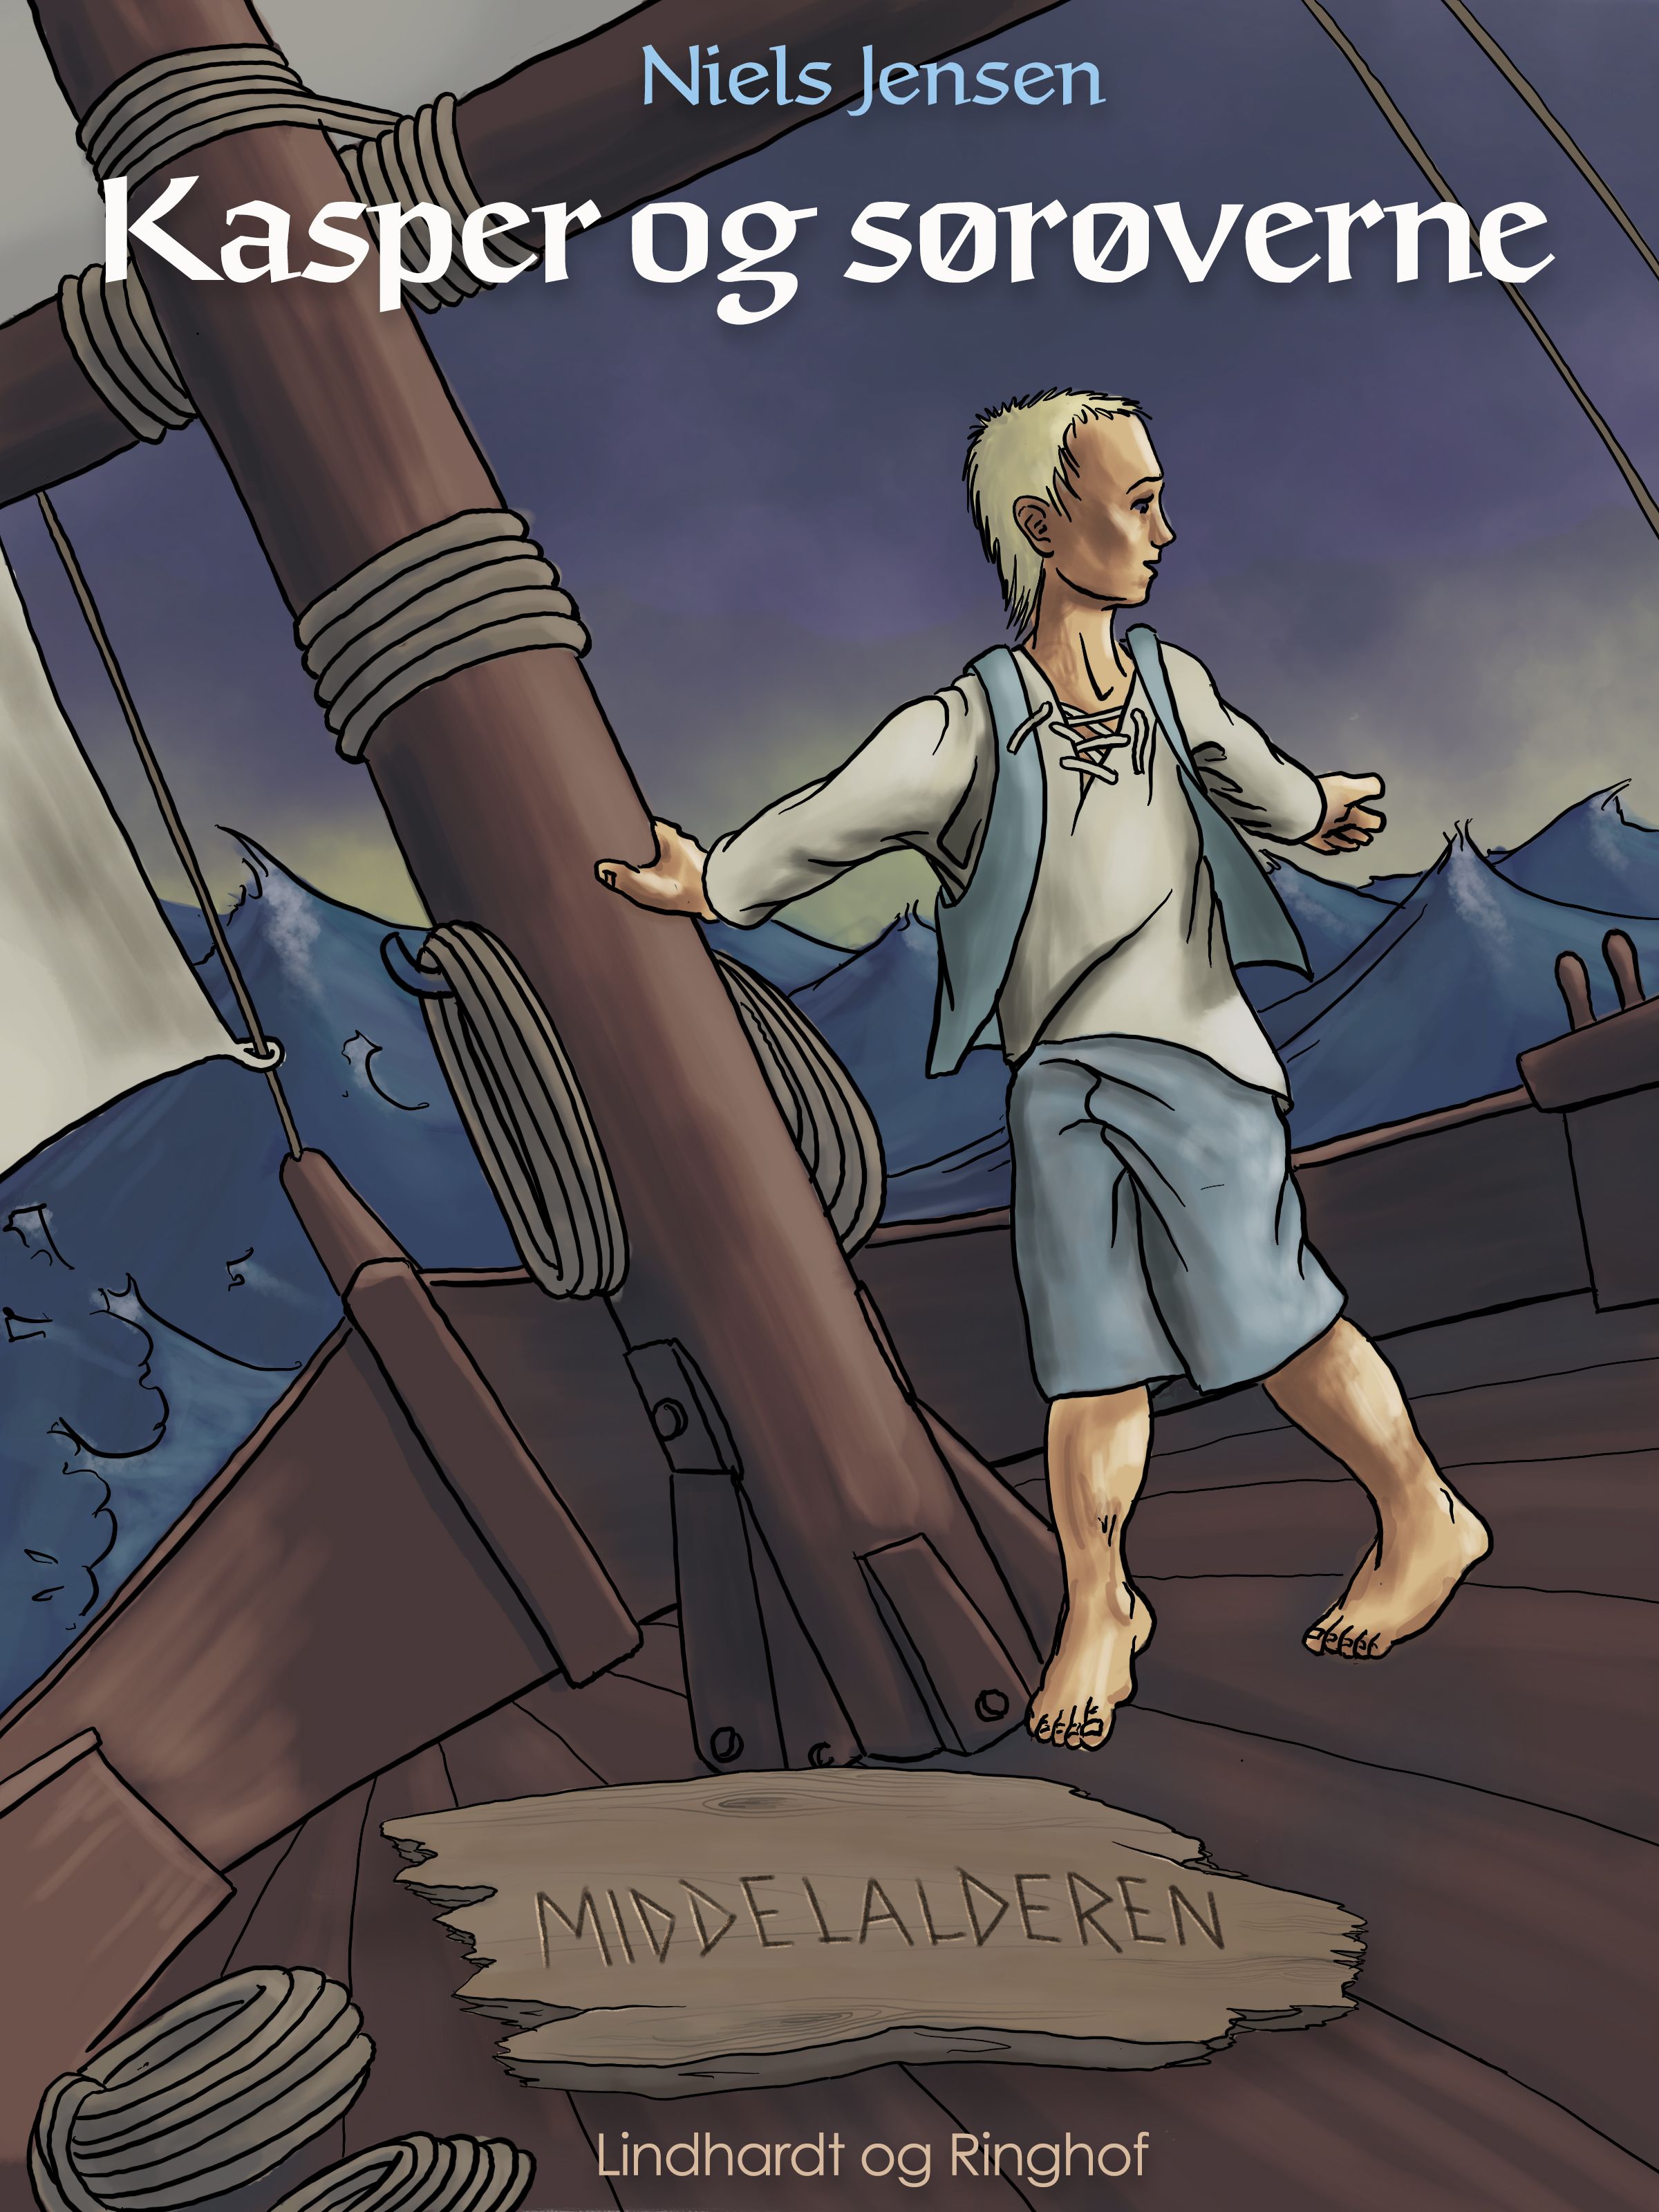 Middelalderen: Kasper og sørøverne, eBook by Niels Jensen